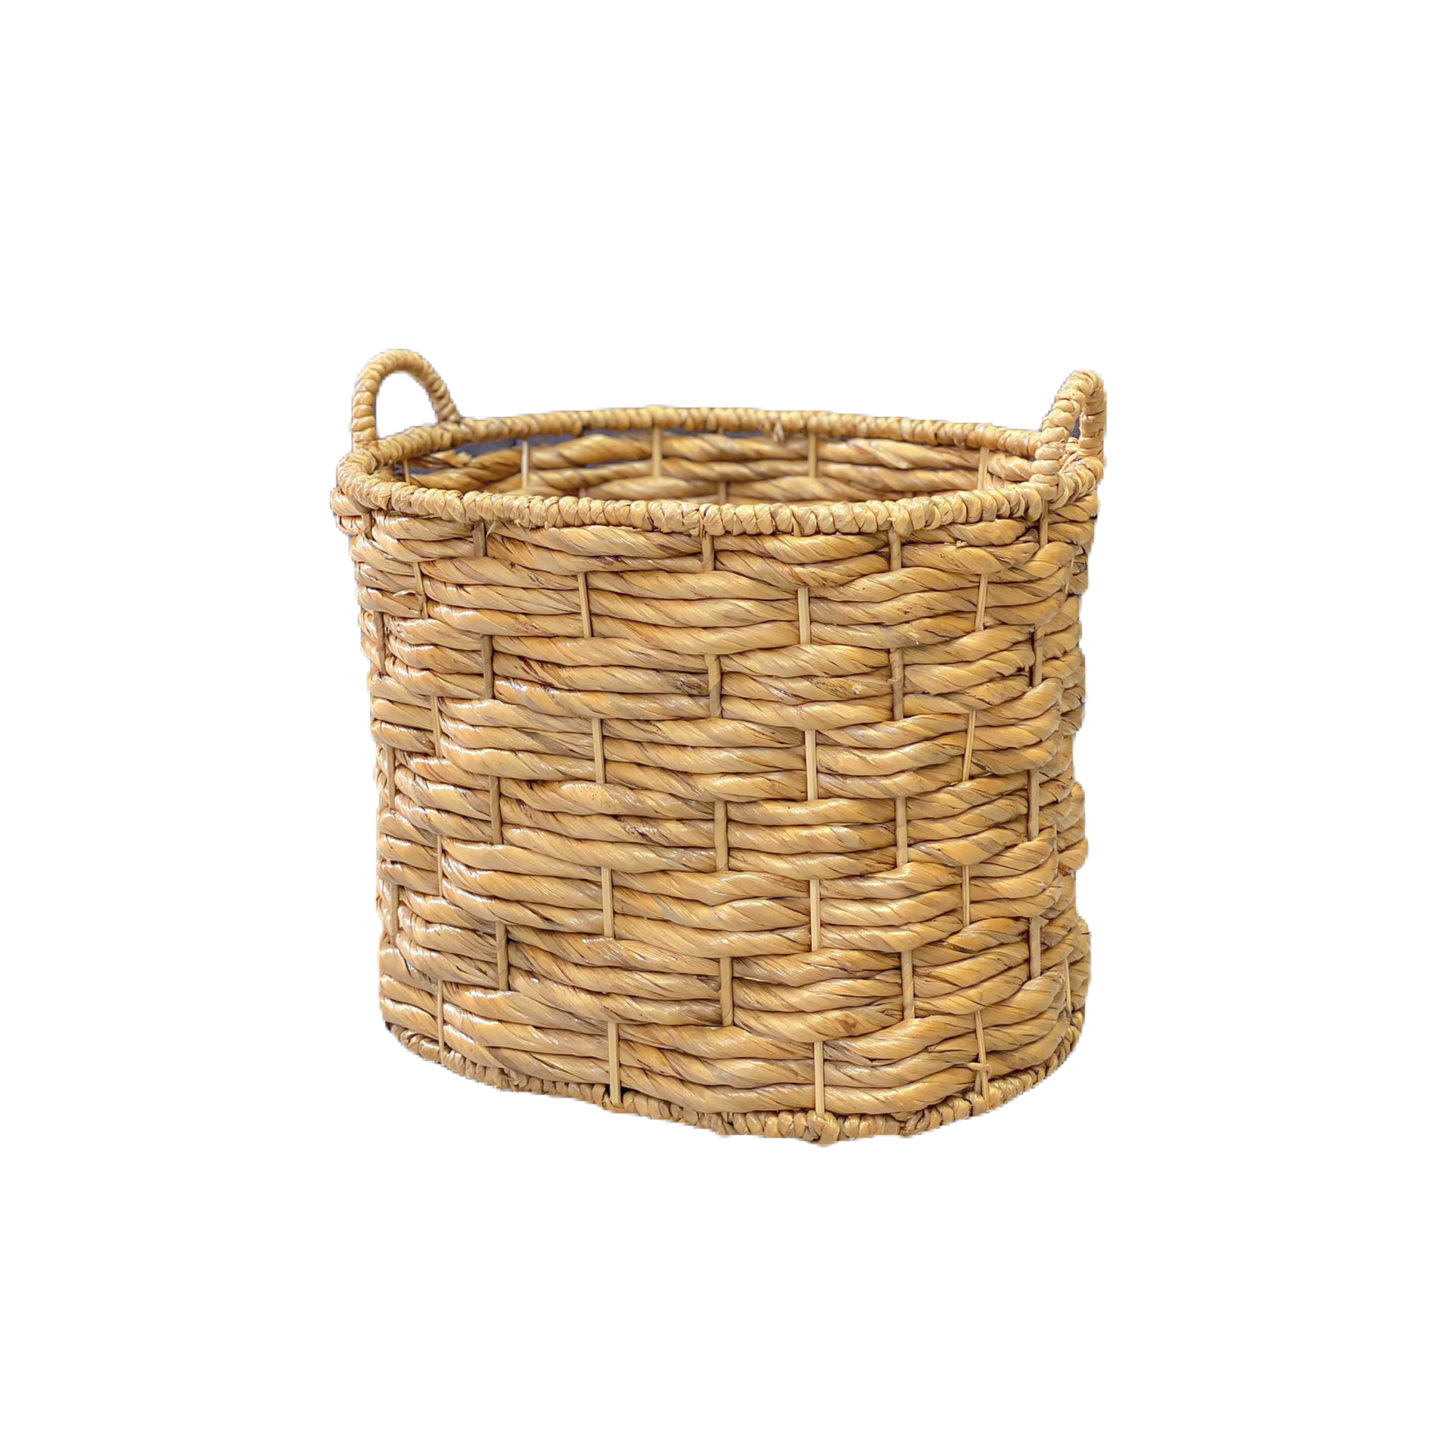 Clothes basket